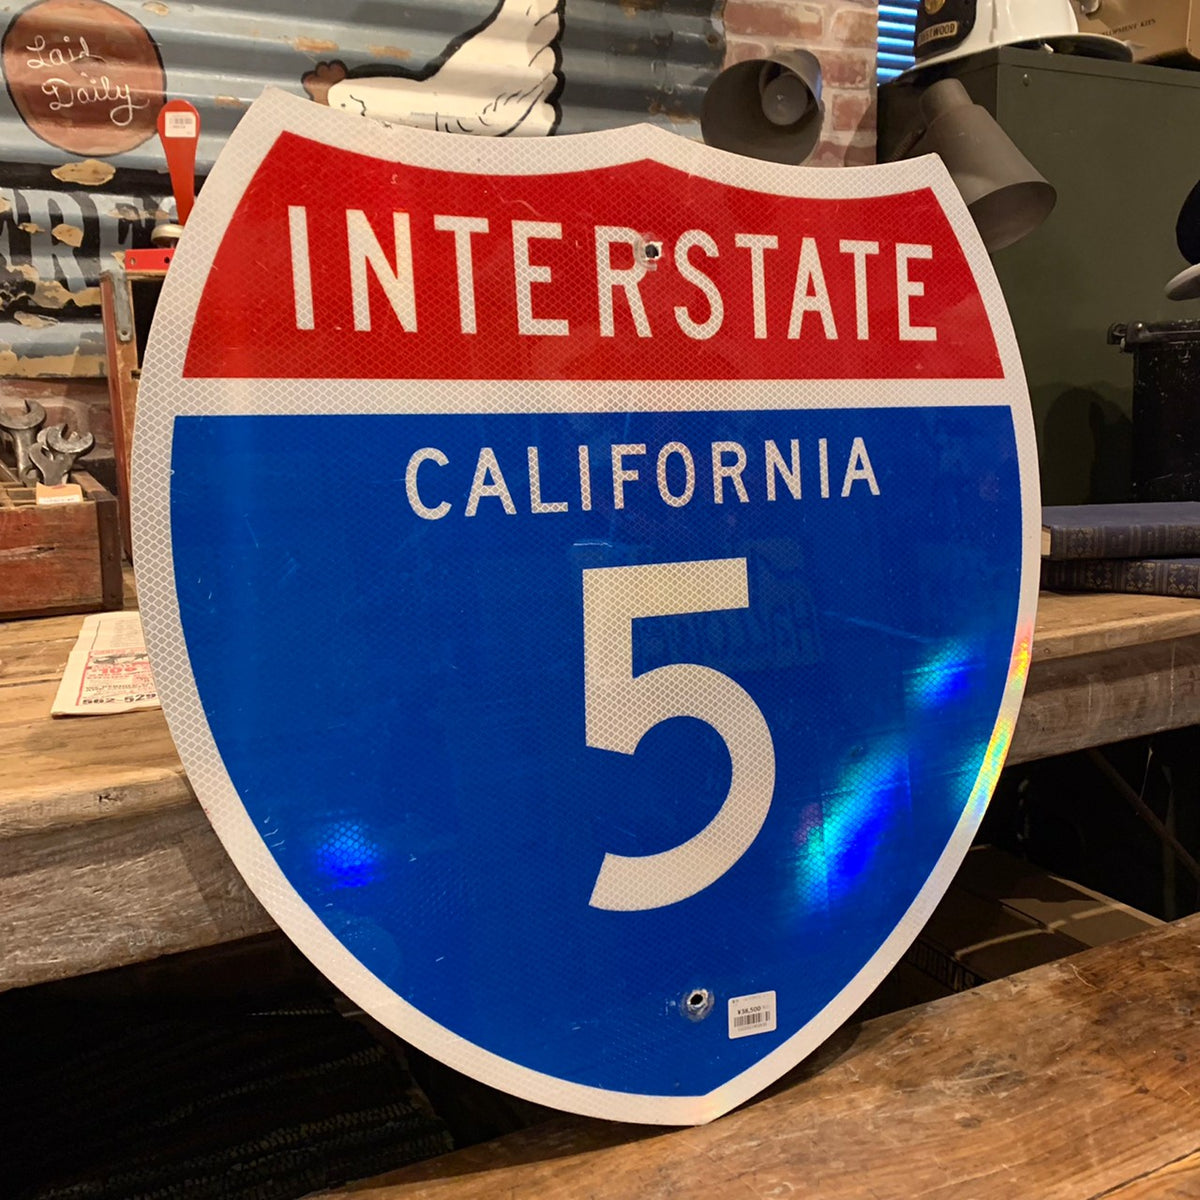 California Interstate 5 FWY メタルサイン-